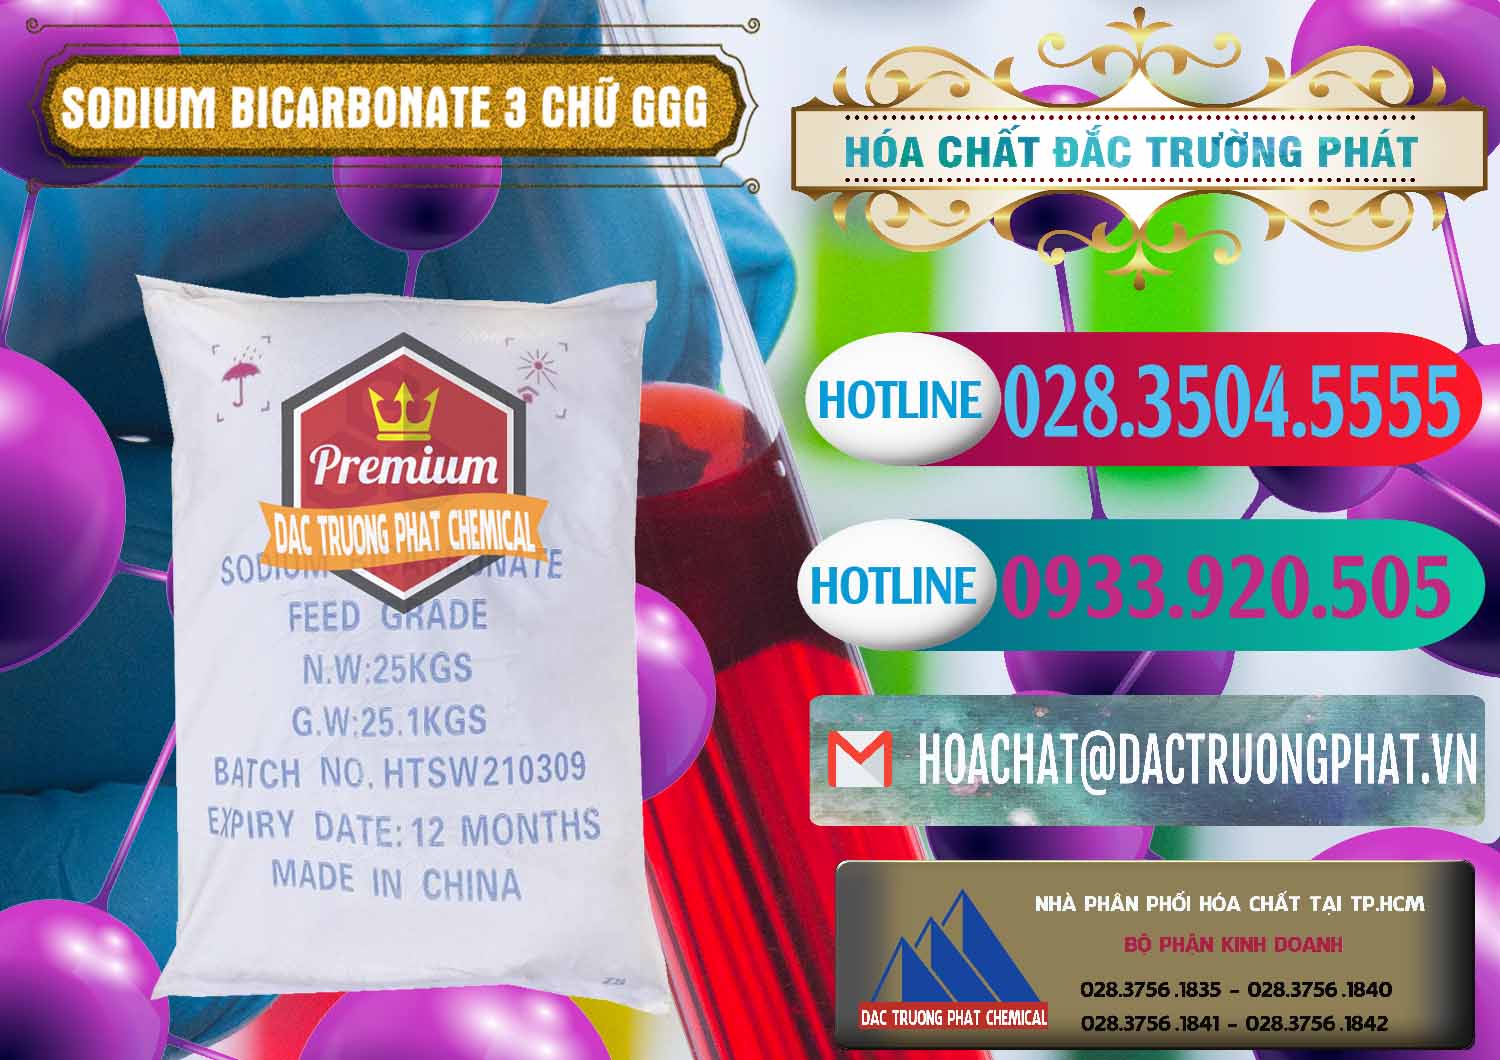 Kinh doanh ( bán ) Sodium Bicarbonate – Bicar NaHCO3 Food Grade 3 Chữ GGG Trung Quốc China - 0259 - Cty chuyên cung cấp ( kinh doanh ) hóa chất tại TP.HCM - truongphat.vn